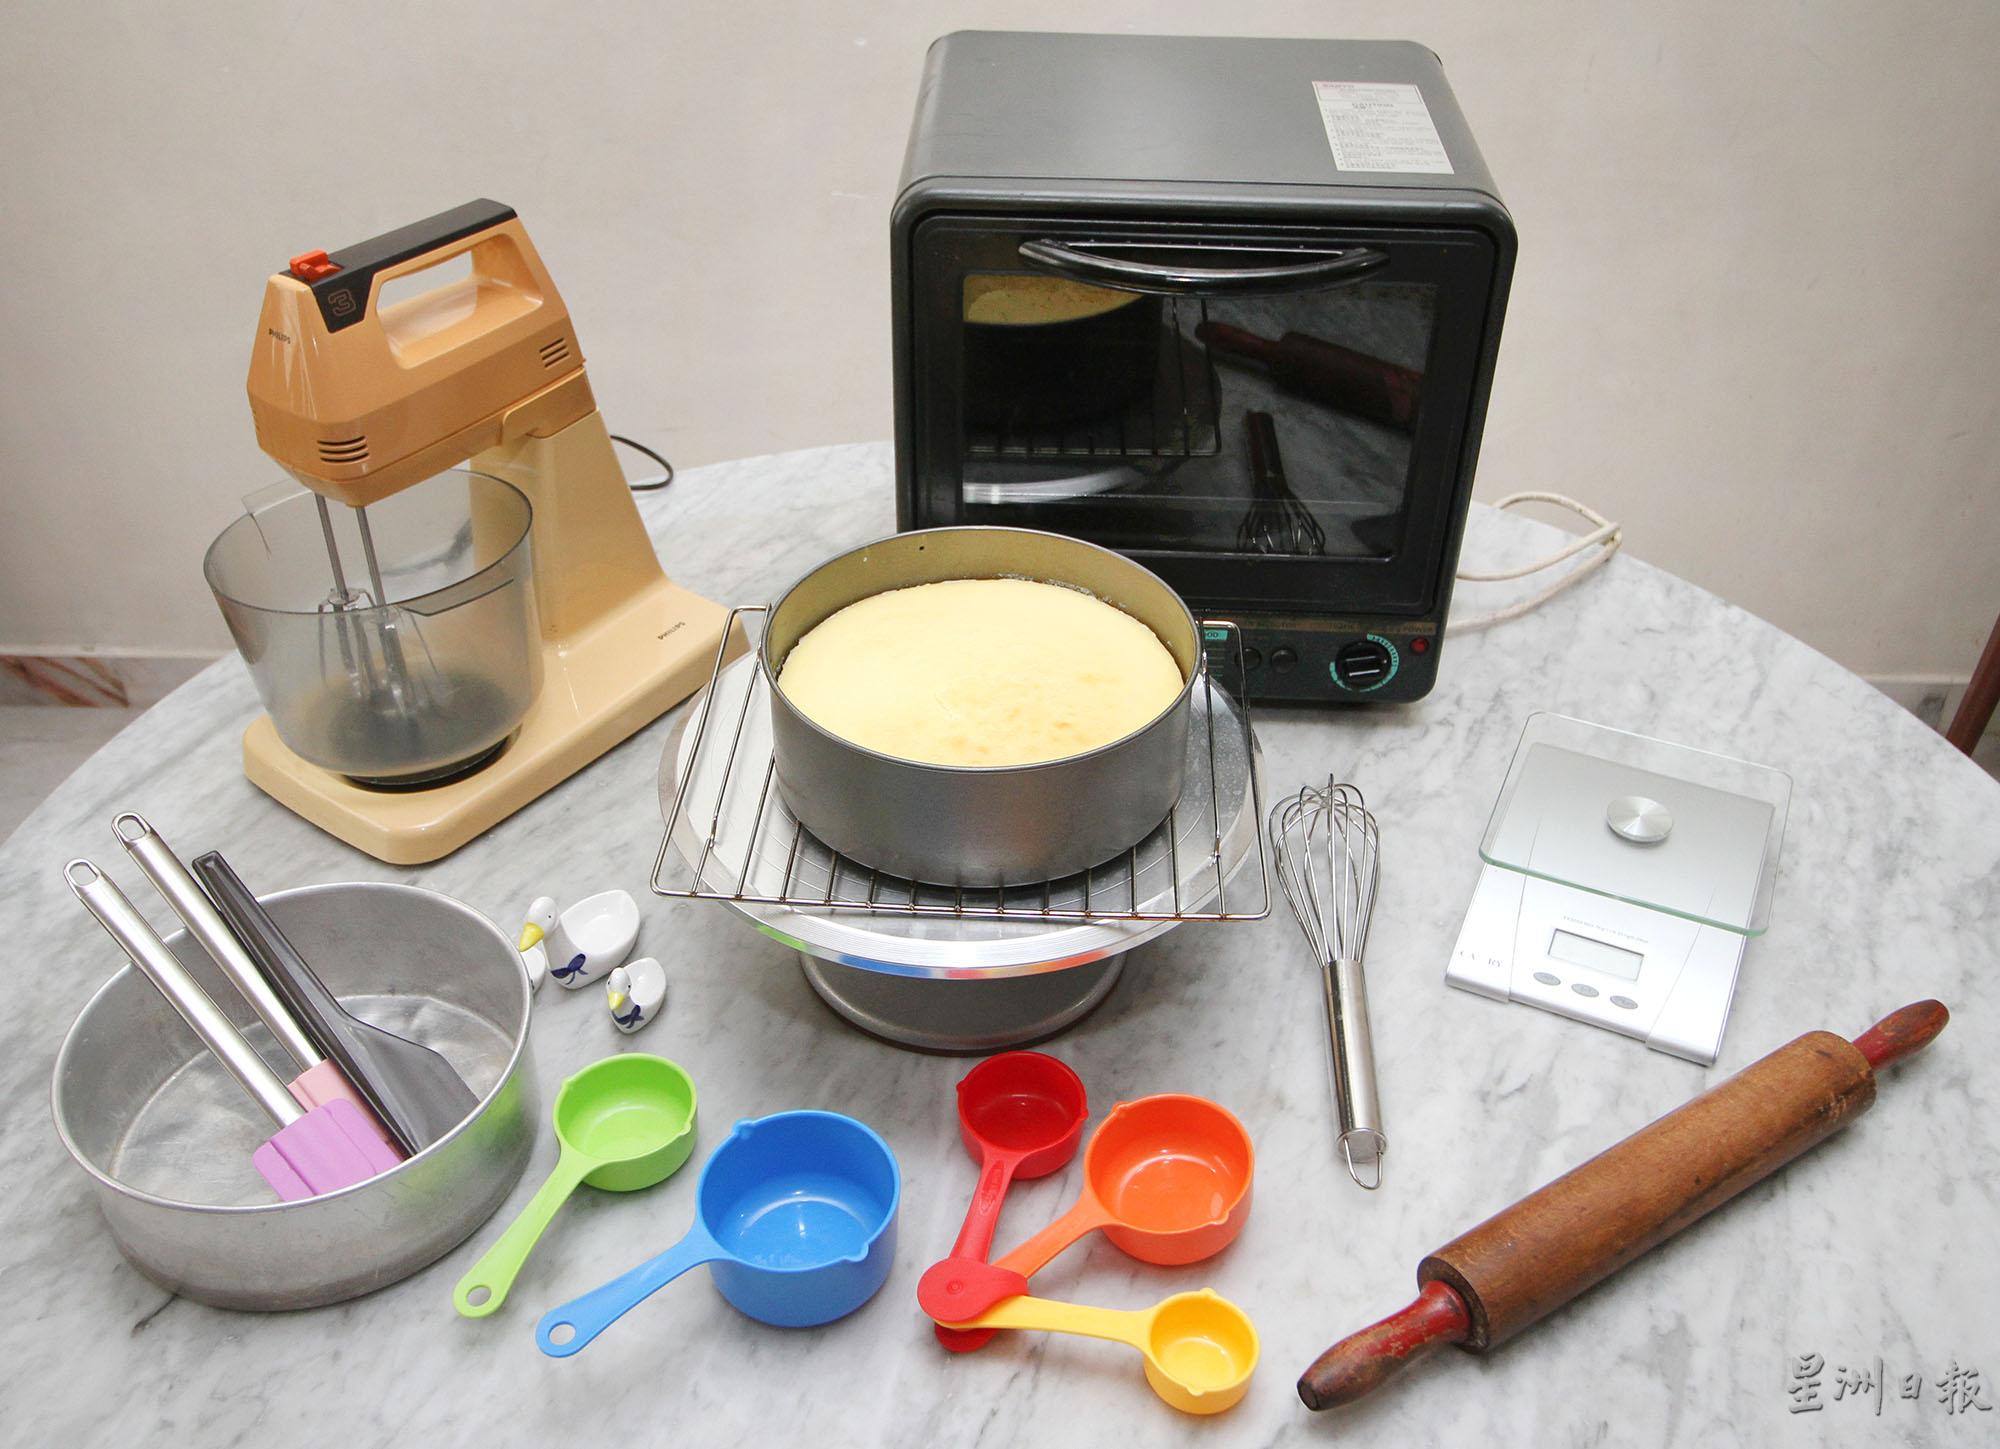 叶金莲制作蛋糕所使用的家庭式小烤炉、看似有点历史的搅拌机和扞面棍等简单工具。